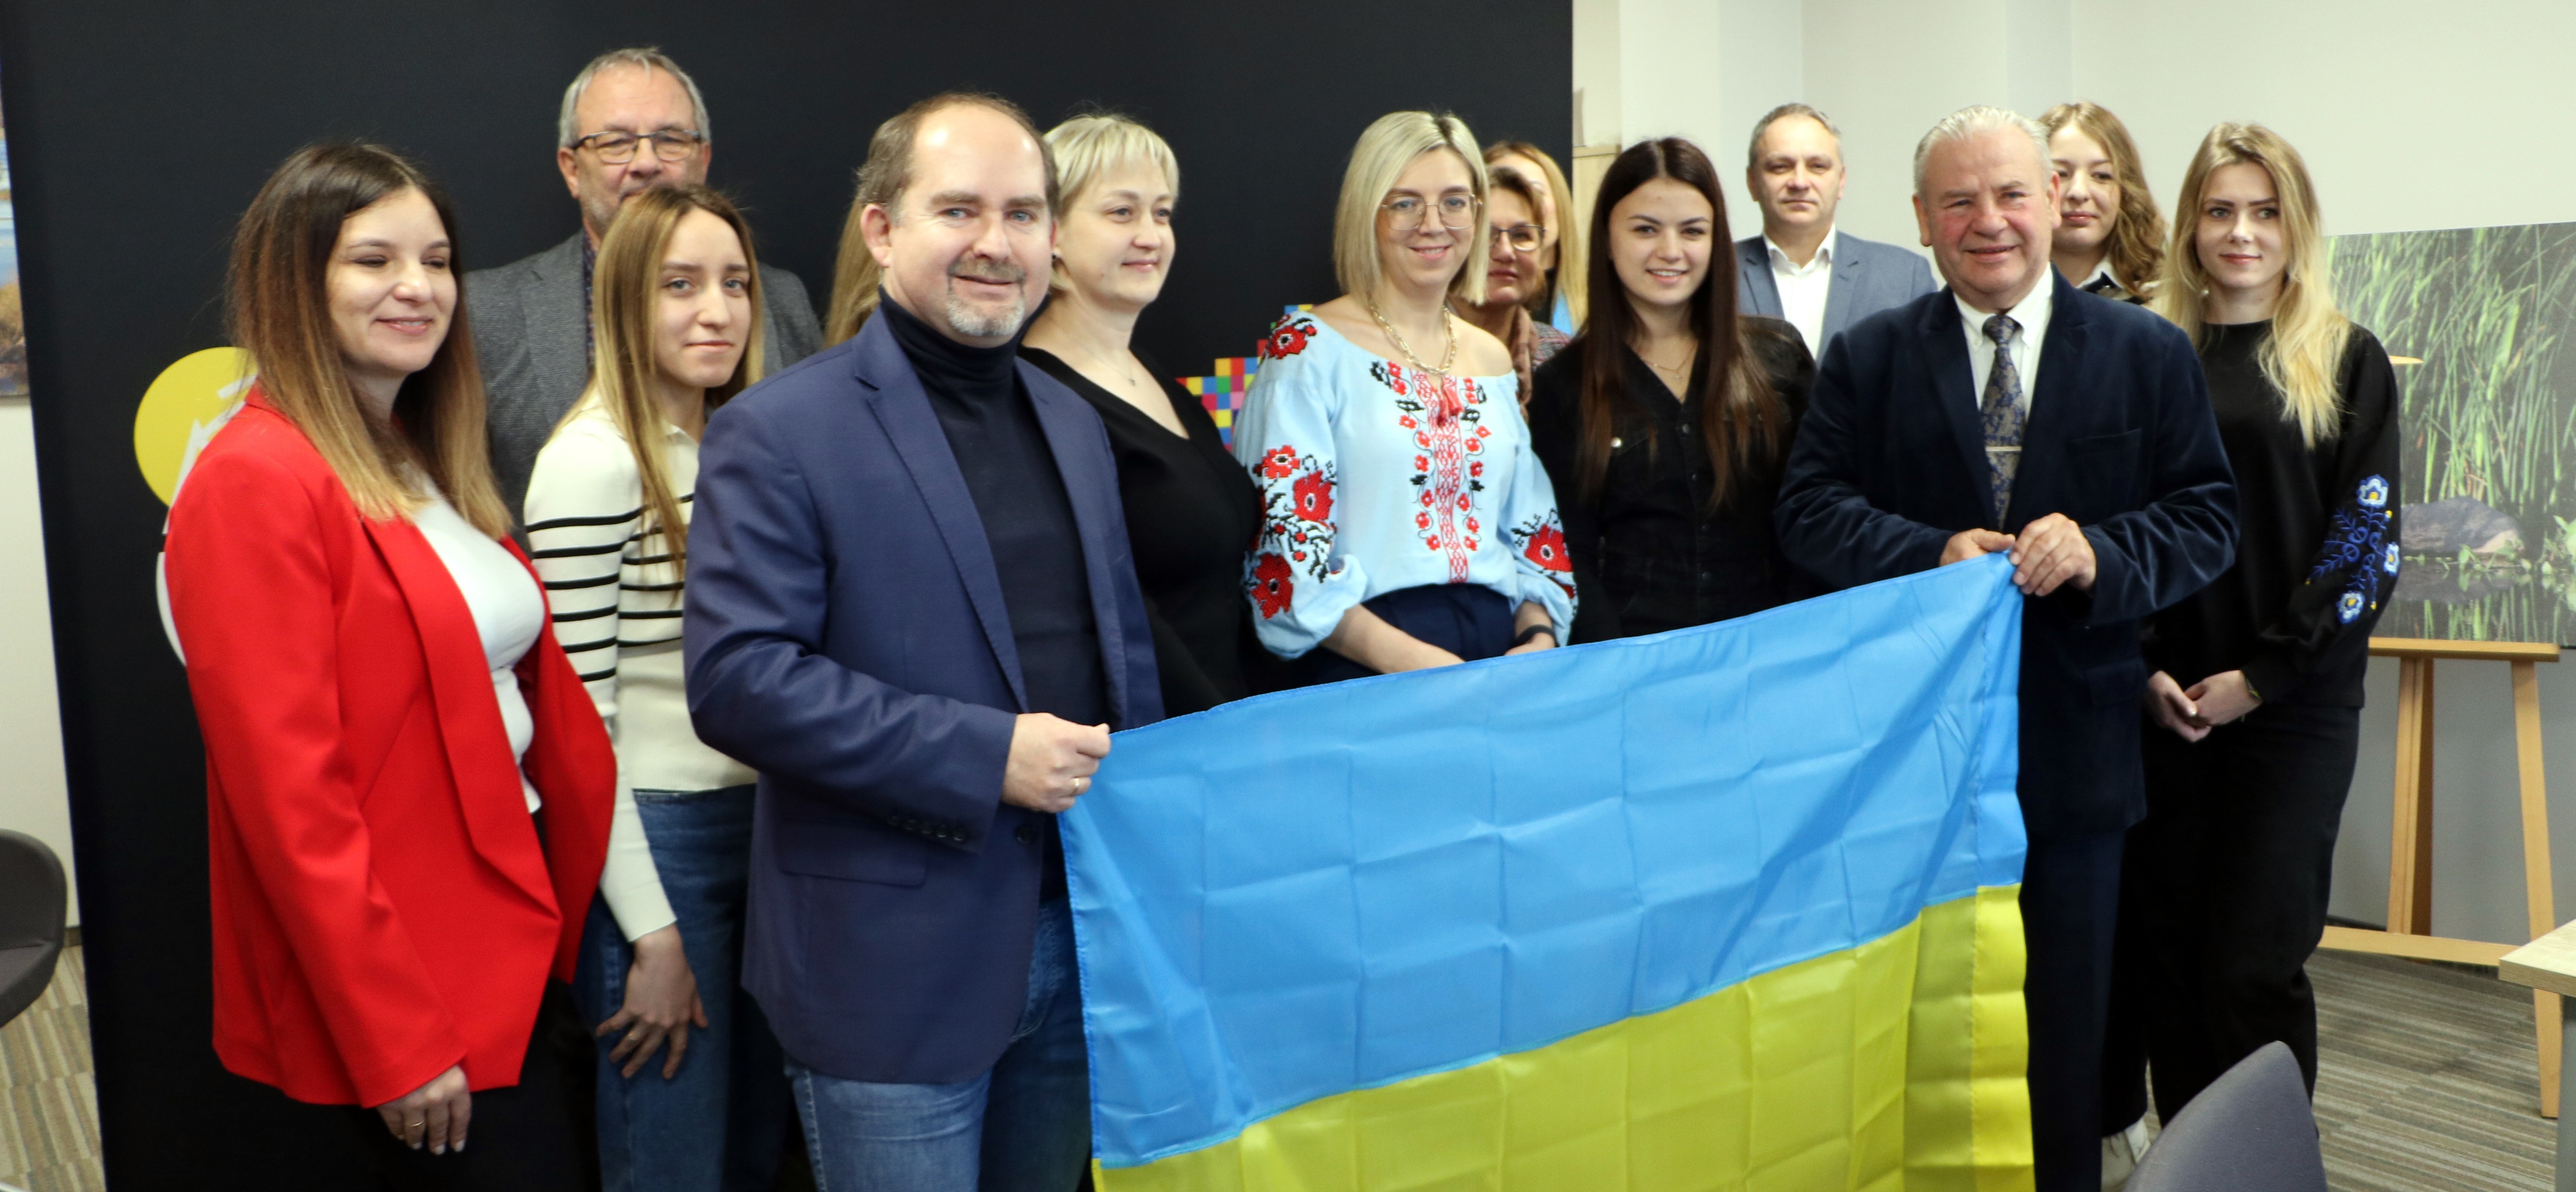 Osoby trzymające ukraińską flagę, pozując do wspólnego zdjęcia